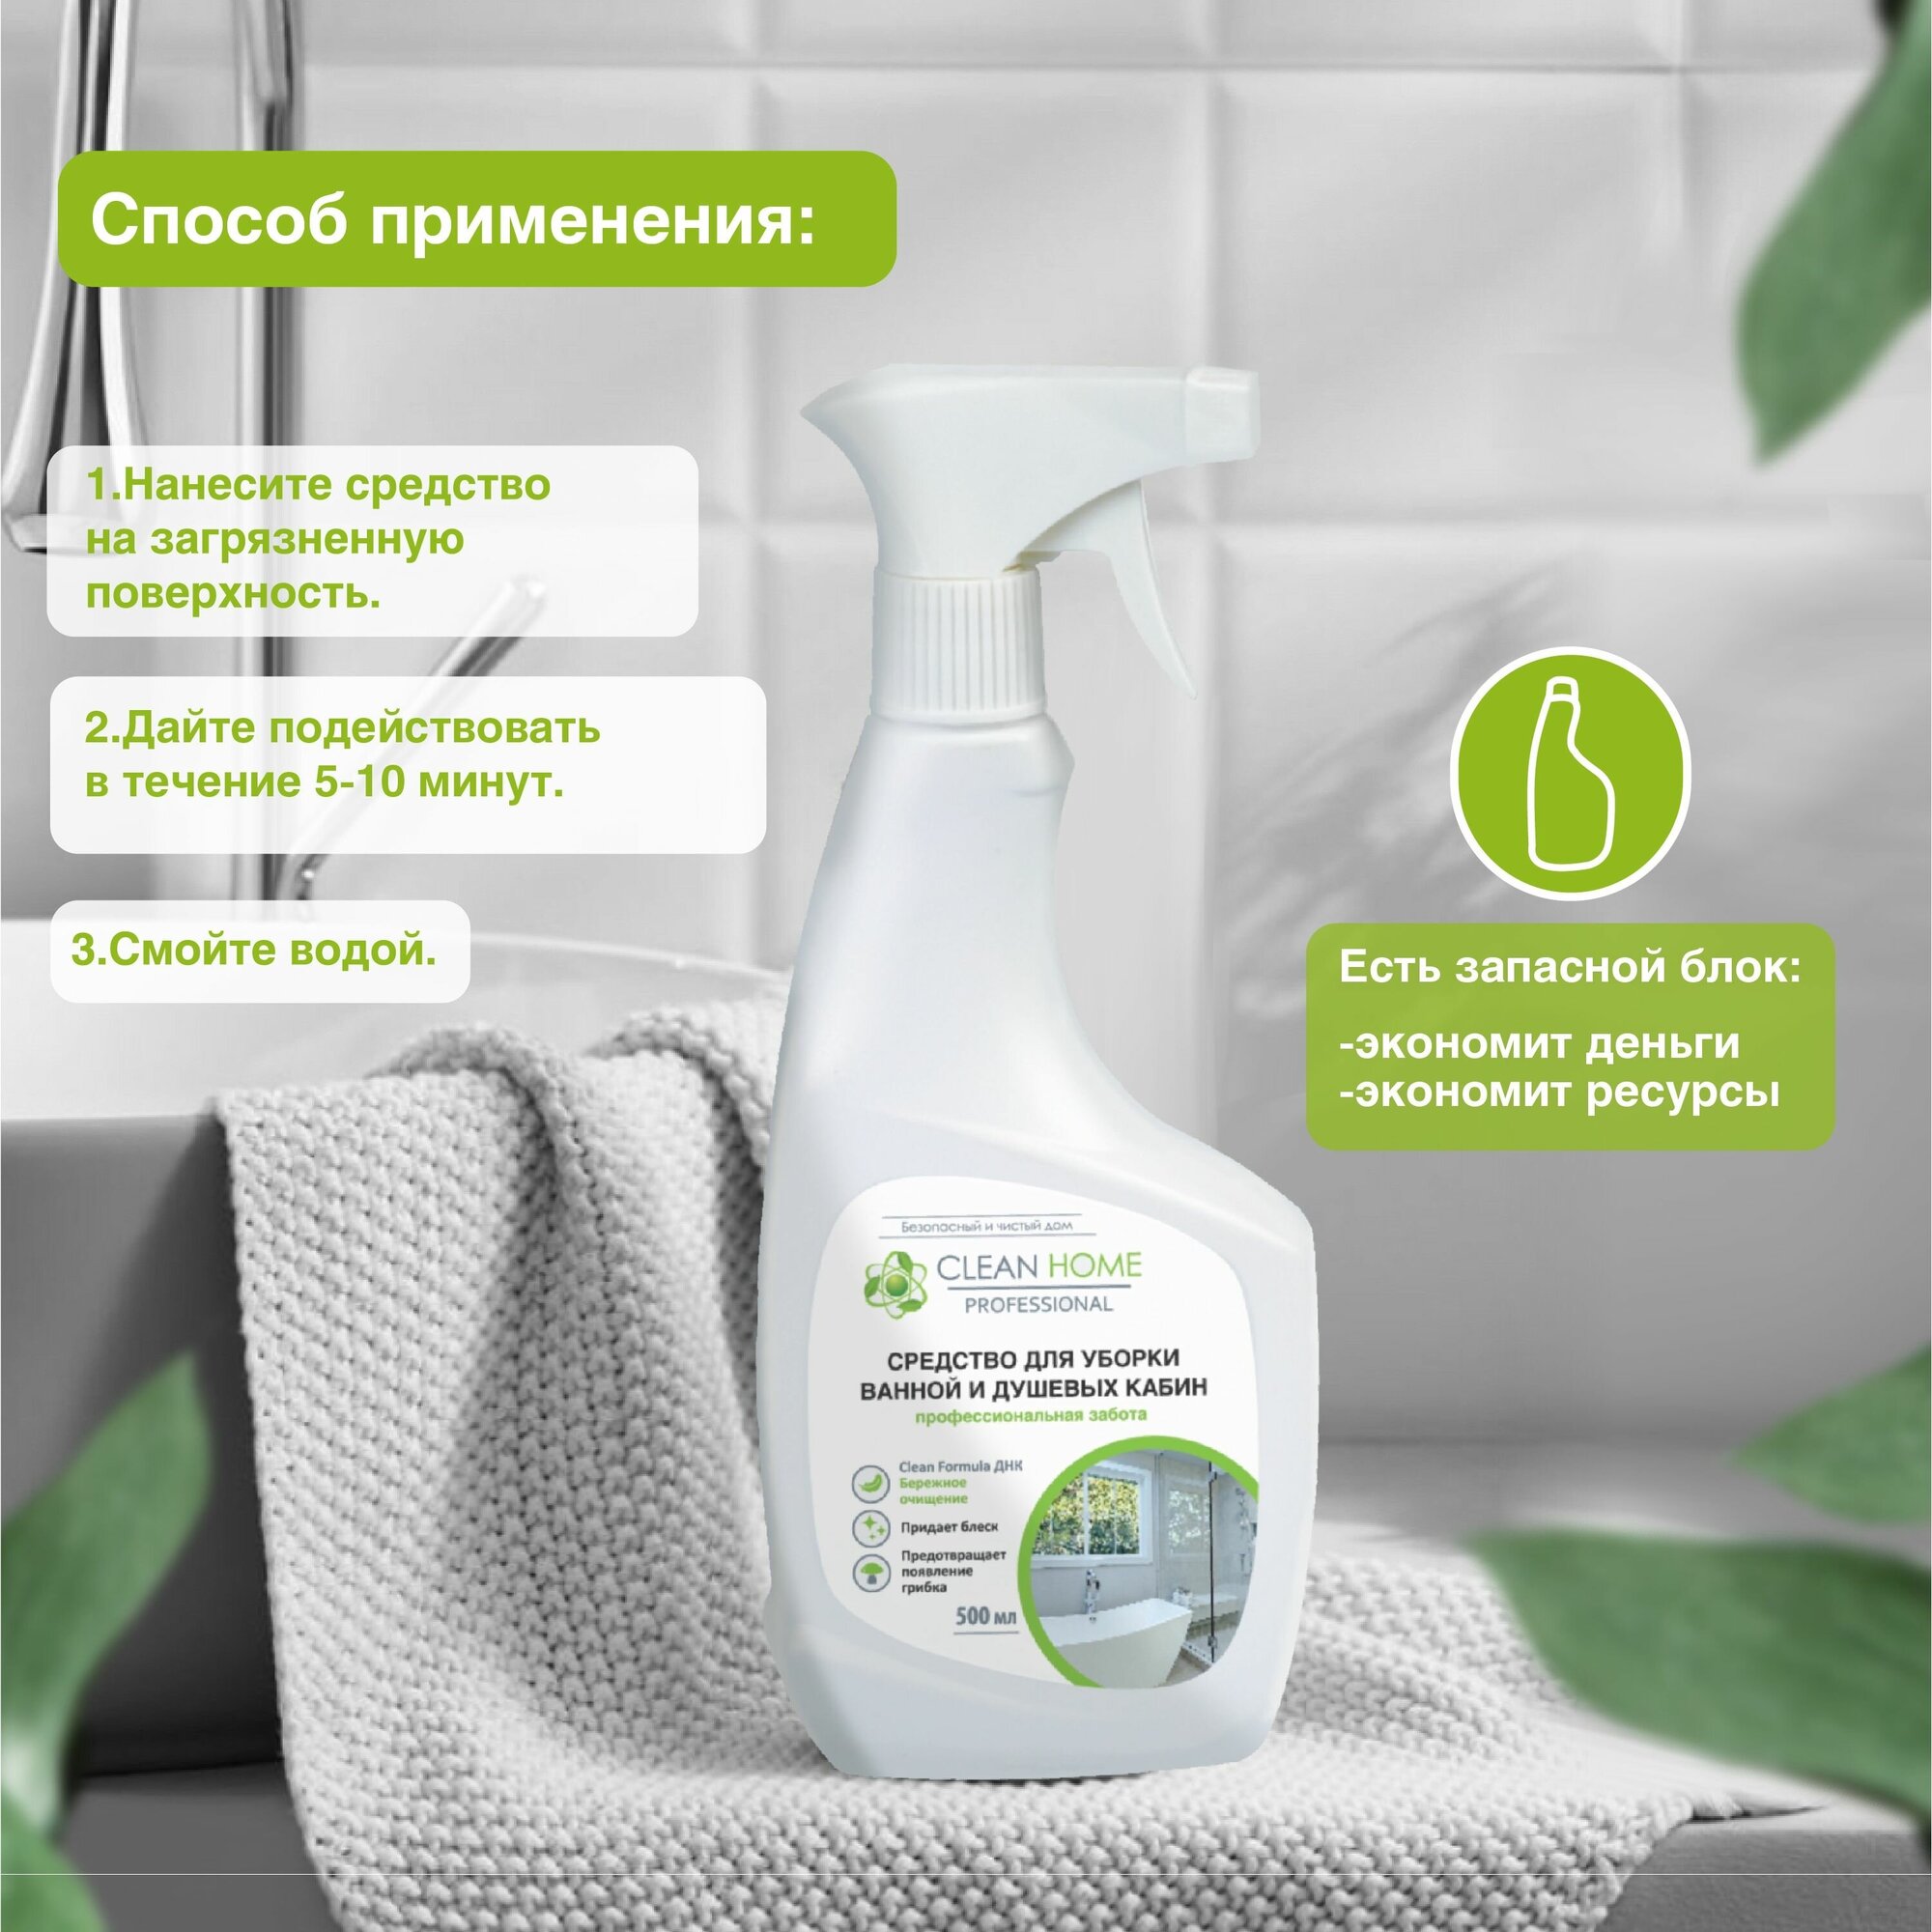 Средство Clean Home для уборки ванной и душевых кабин 500 мл - фото №3